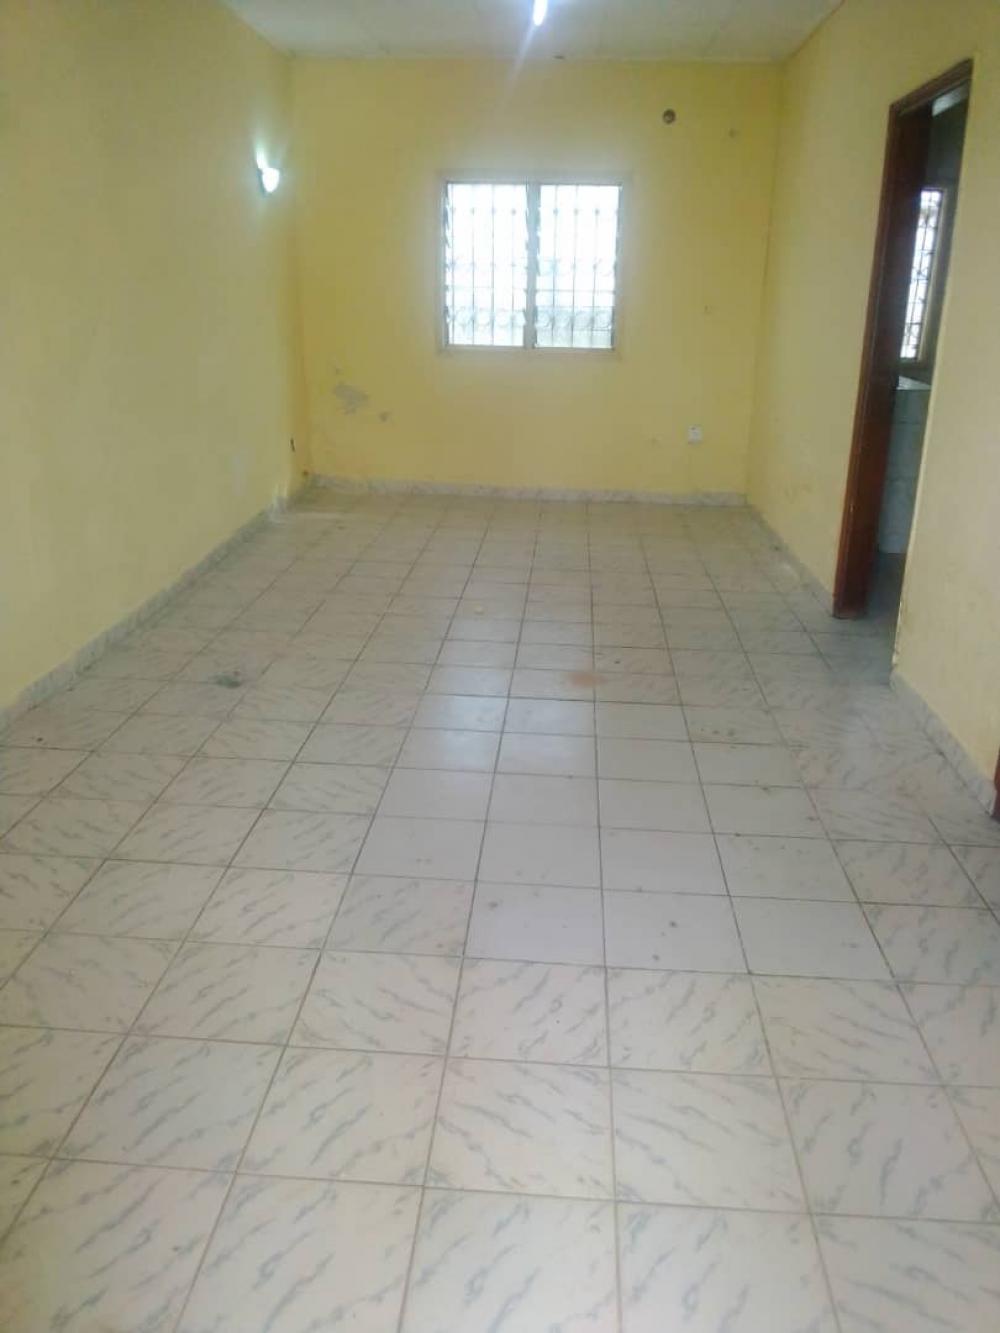 Appartement 3 chambres à louer à Libreville, Angondjé. Prix: 350 000 FcfaPhoto Annonce Gabonhome 0